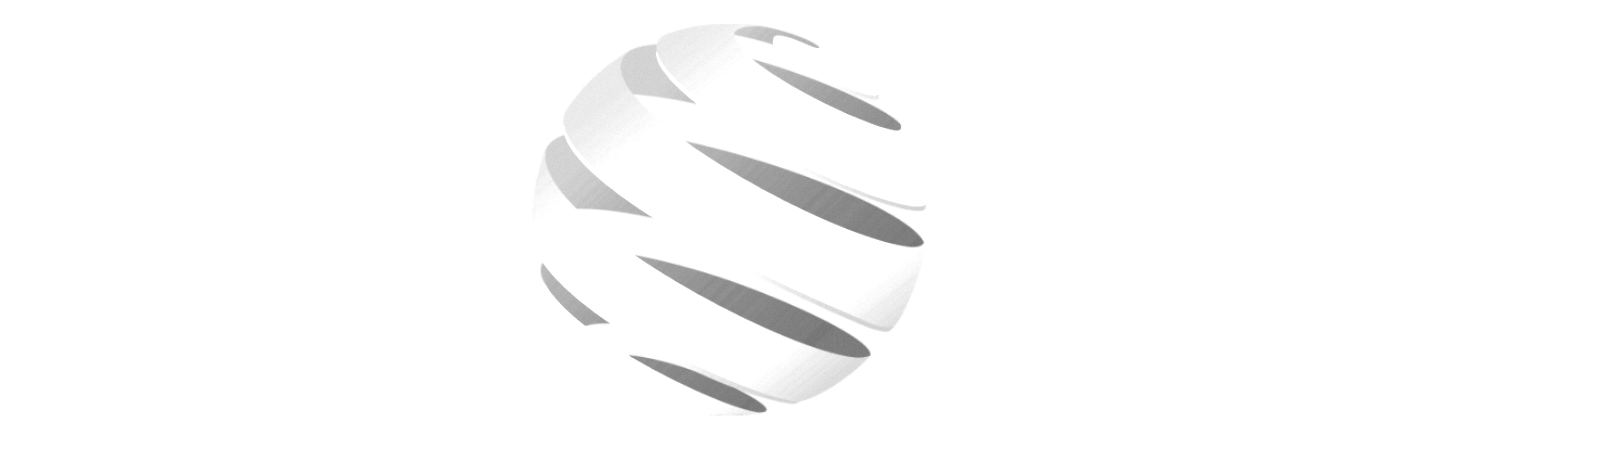 logo Ipost bigbnw